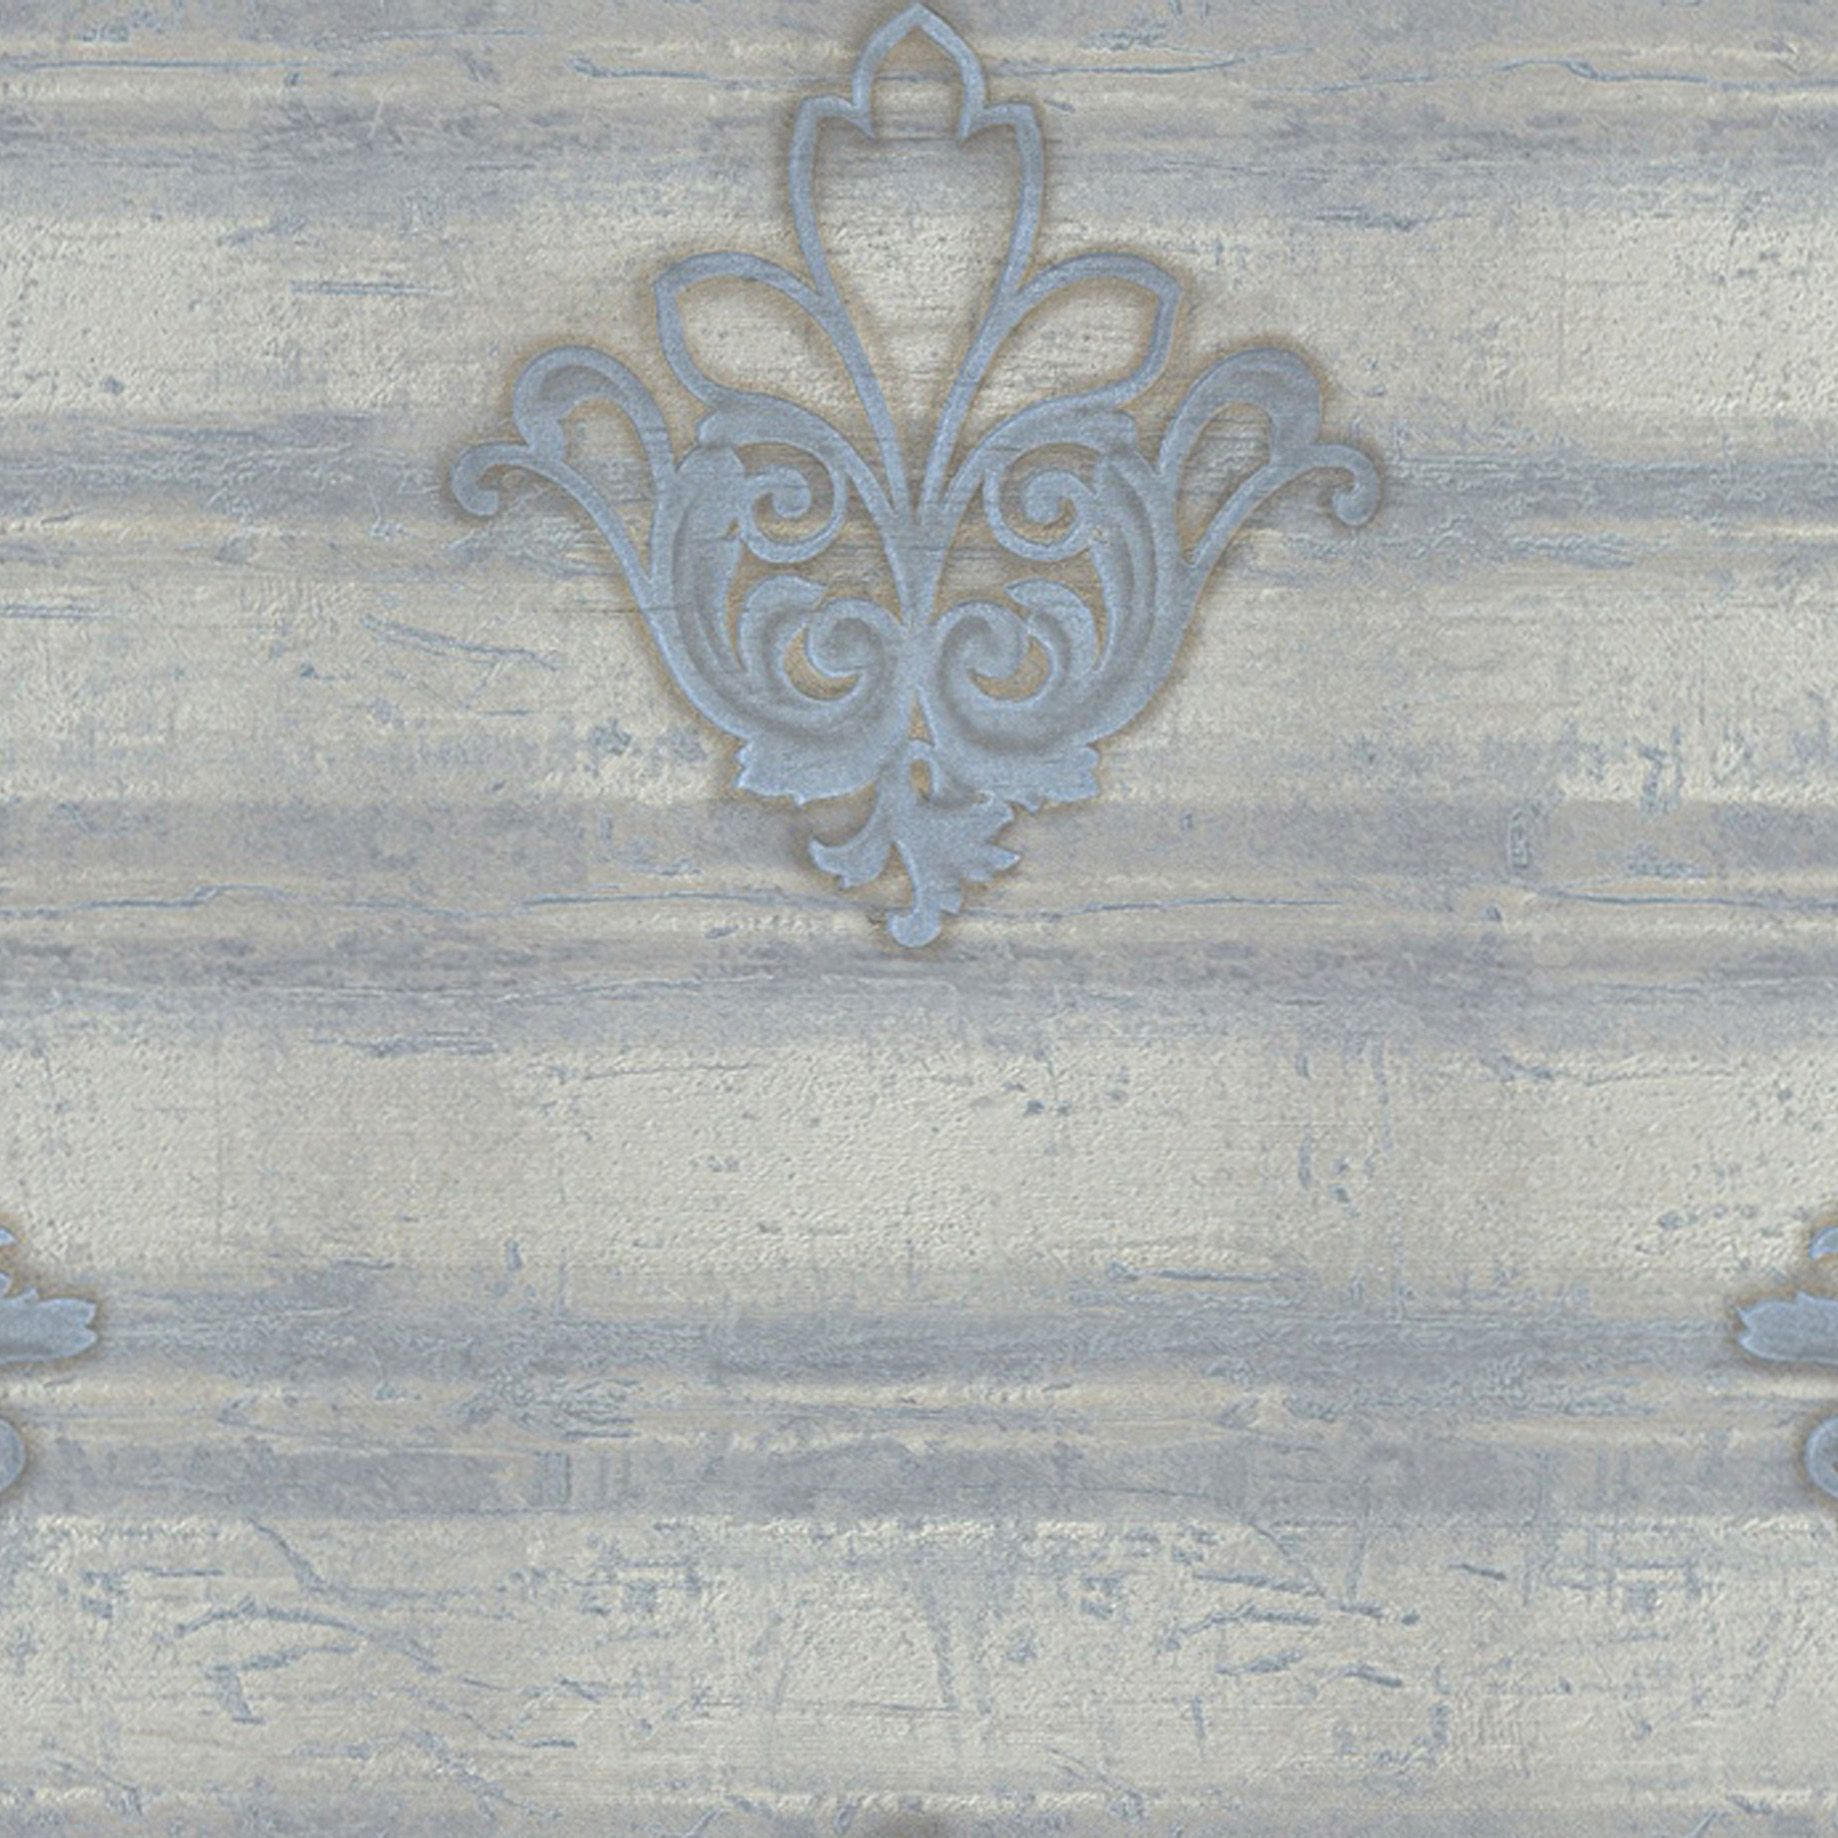 Обои 42356 Gemma Emiliana Parati - итальянские, флизелиновые, голубового тона, с орнаментом, в классическом стиле, длина 10.00м, ширина 0.70м, рекомендуем в коридор.